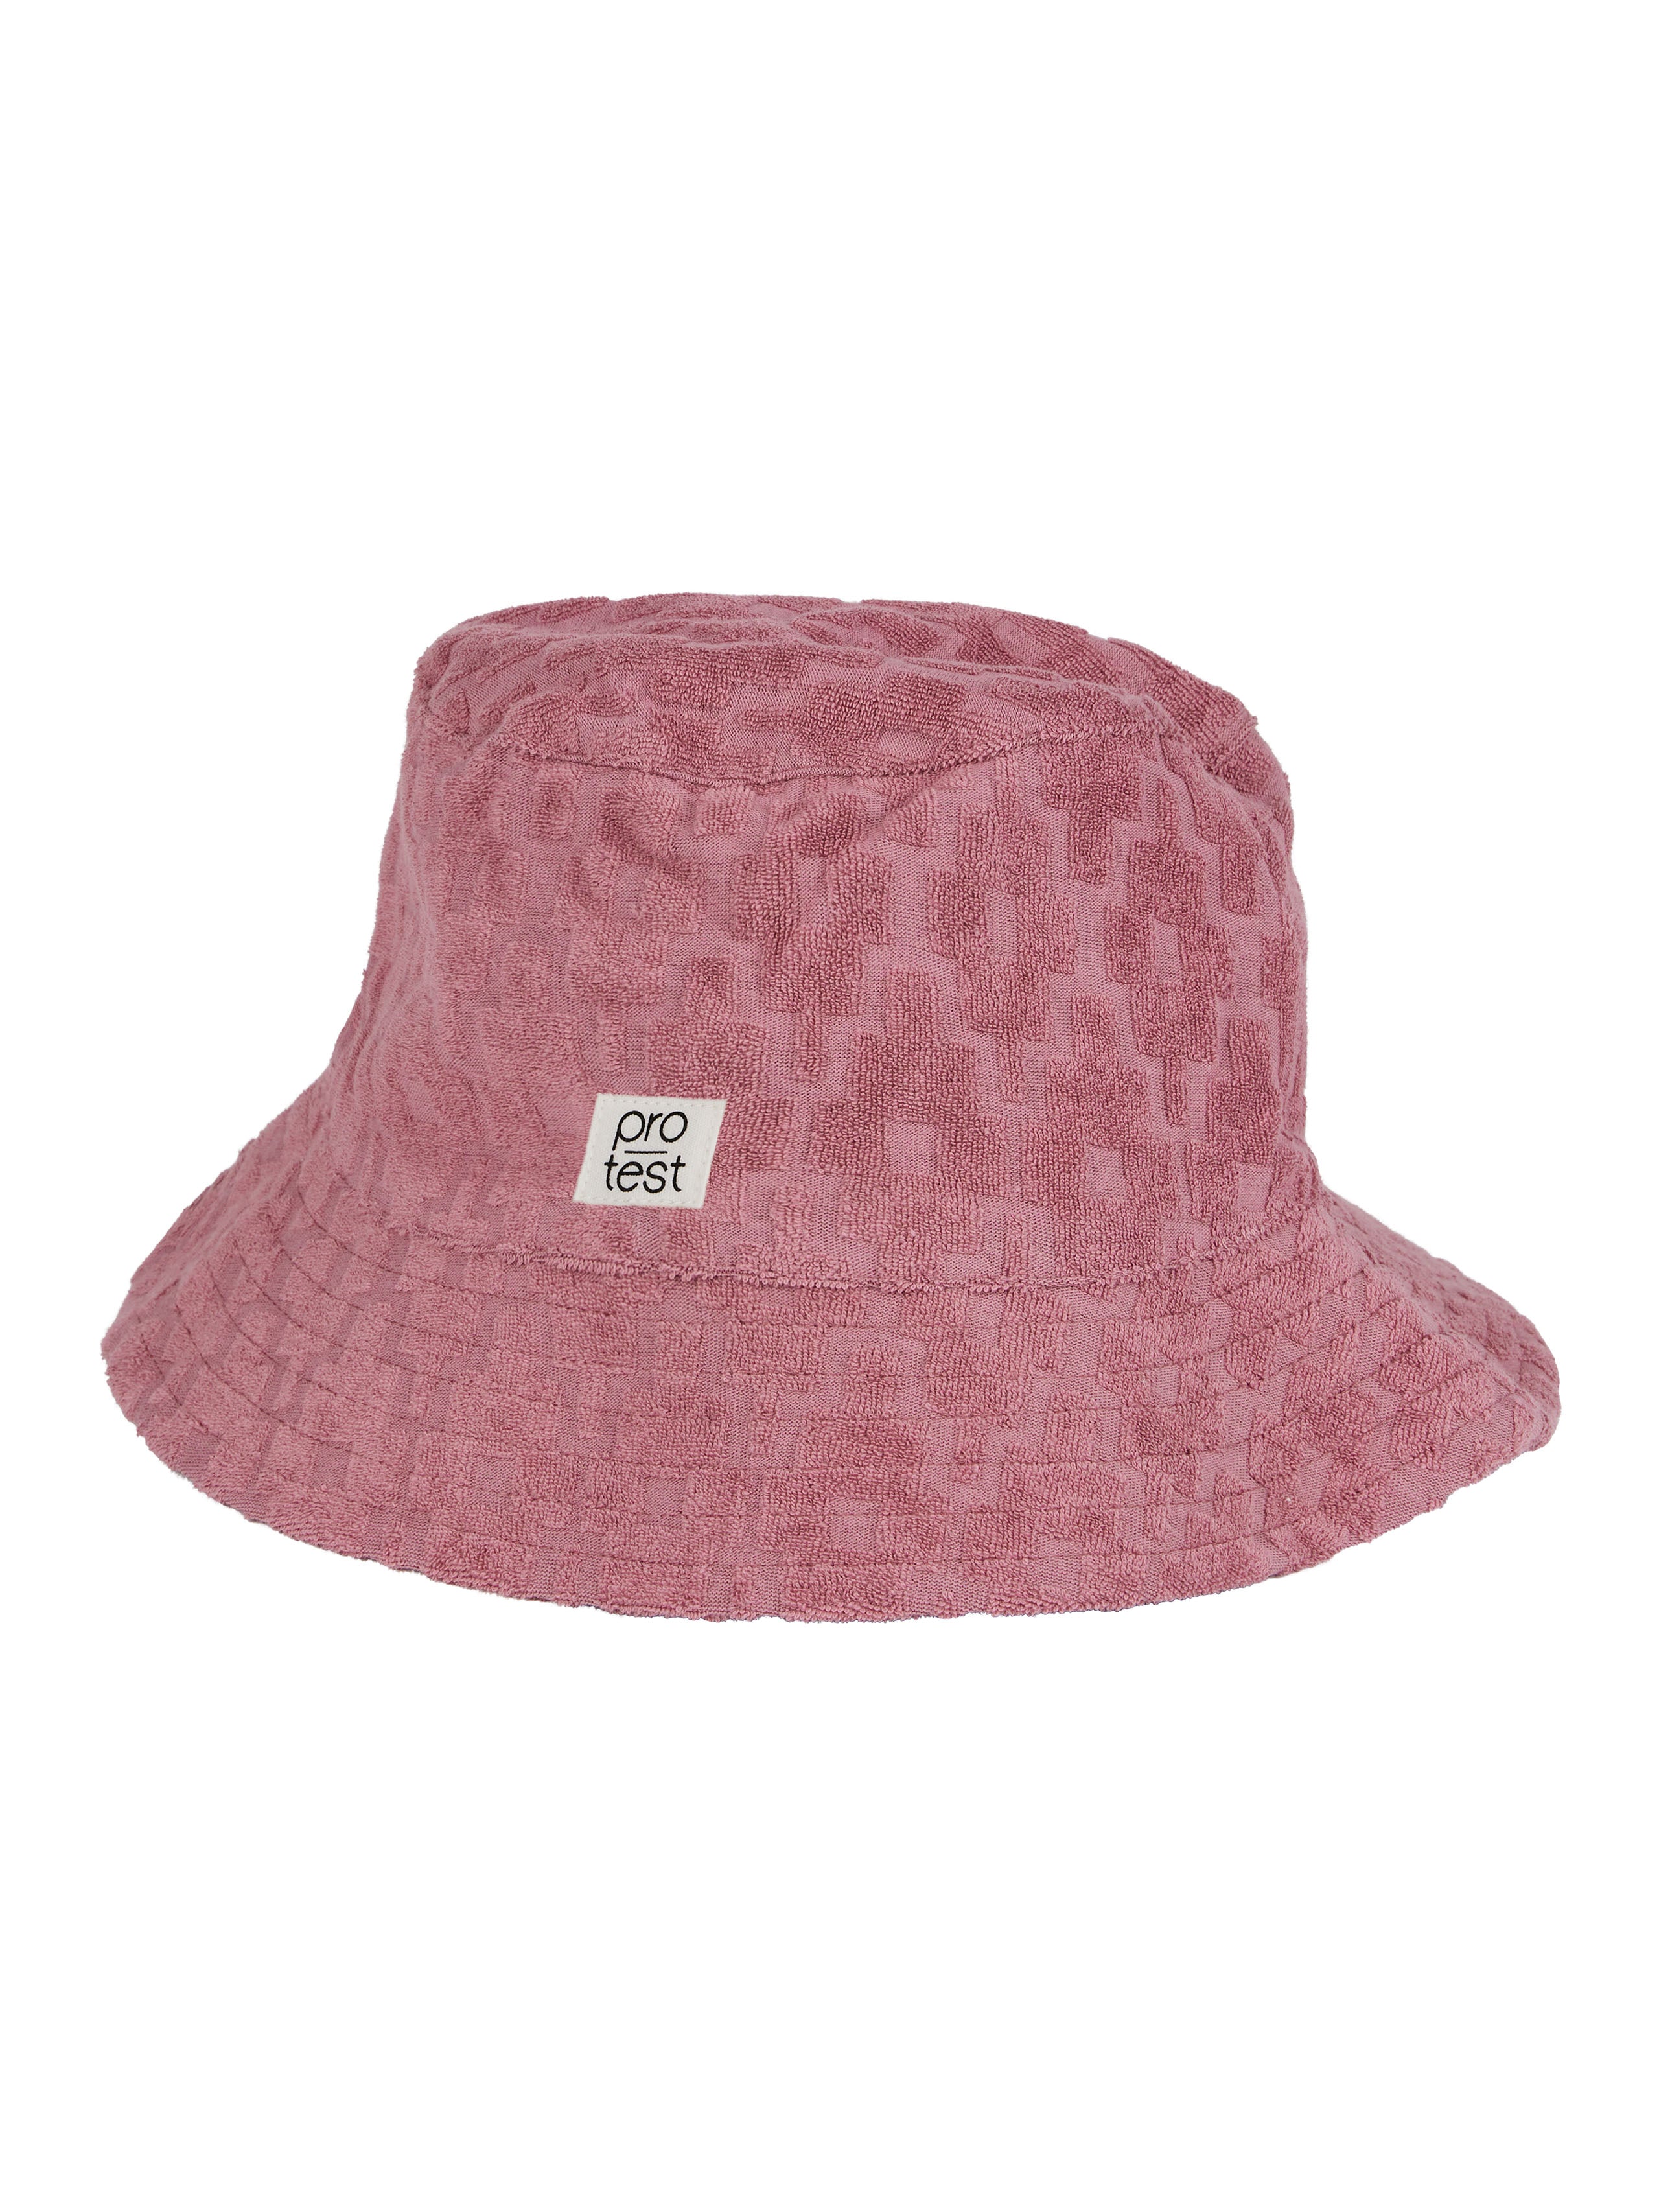 PRTGUUSJE hat